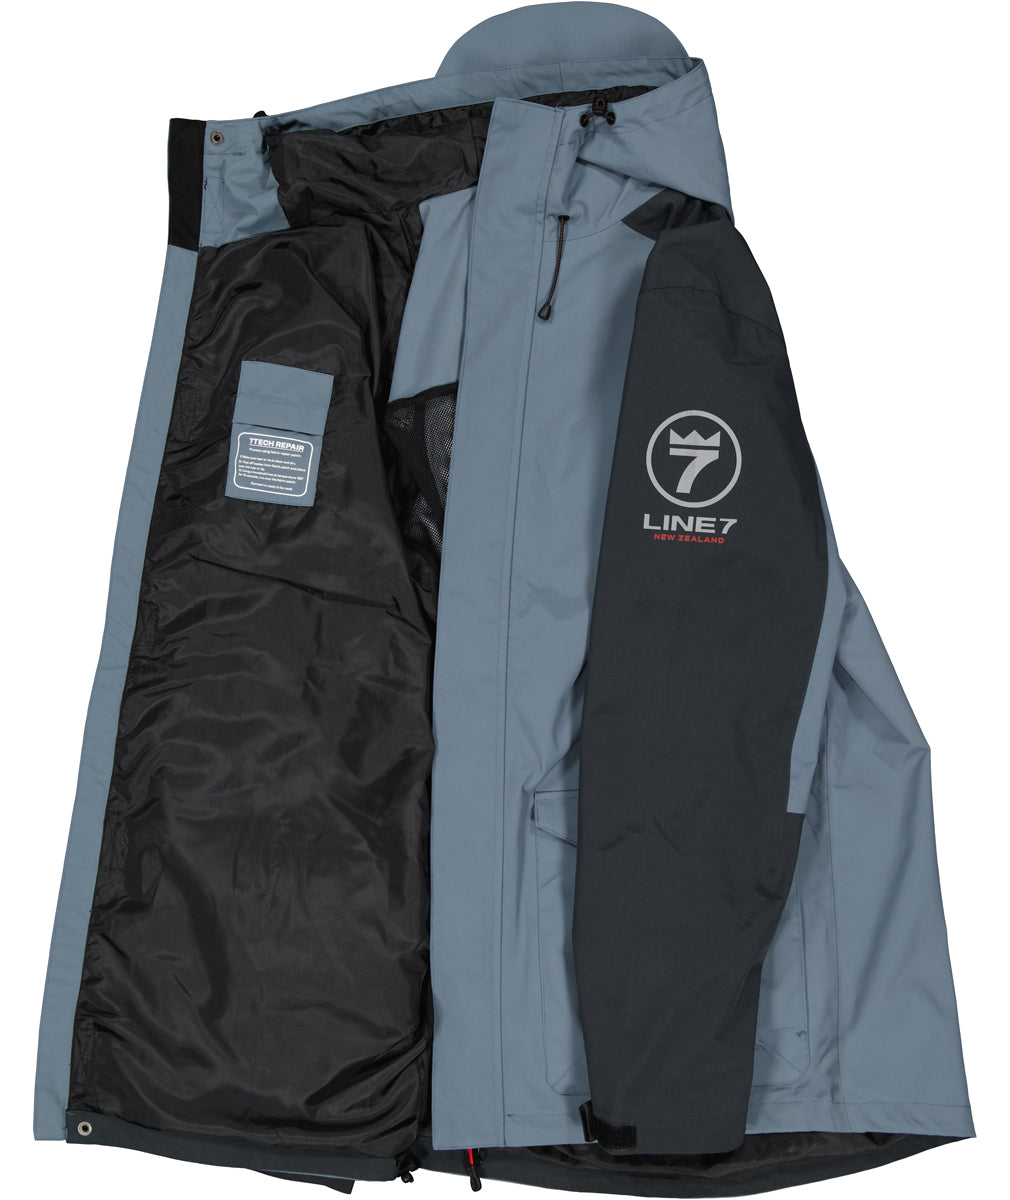 line-7-men-s-storm-armour10-waterproof-2-layer-jacket_1.jpg